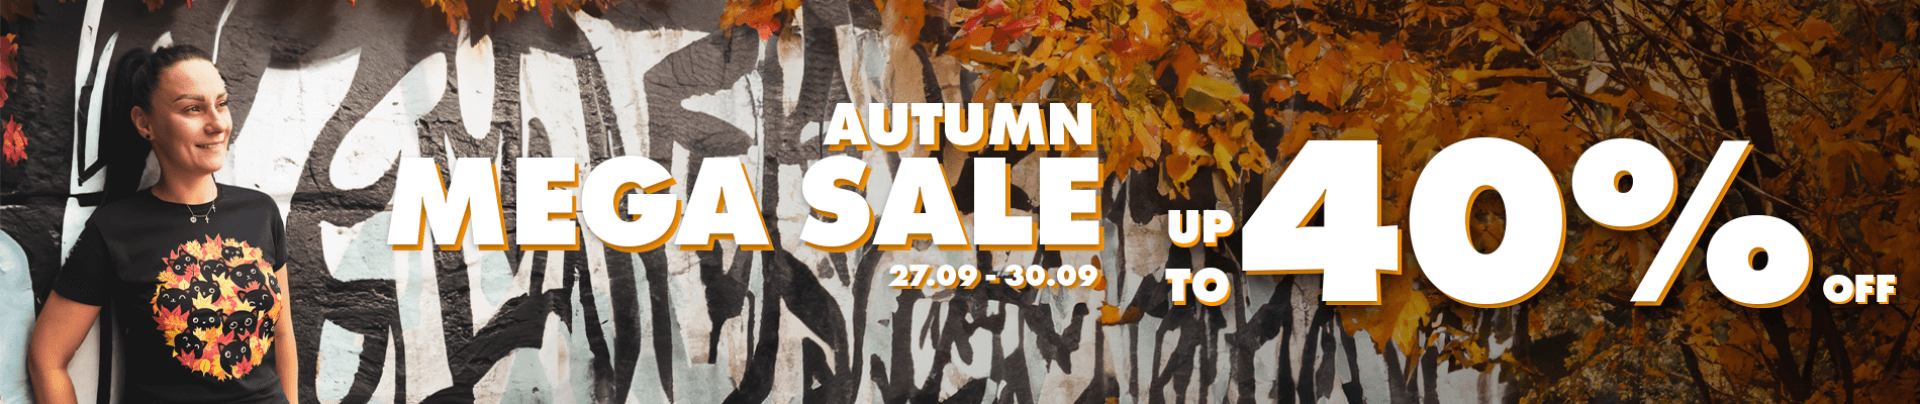 Autumn mega sale! ups to 40% off